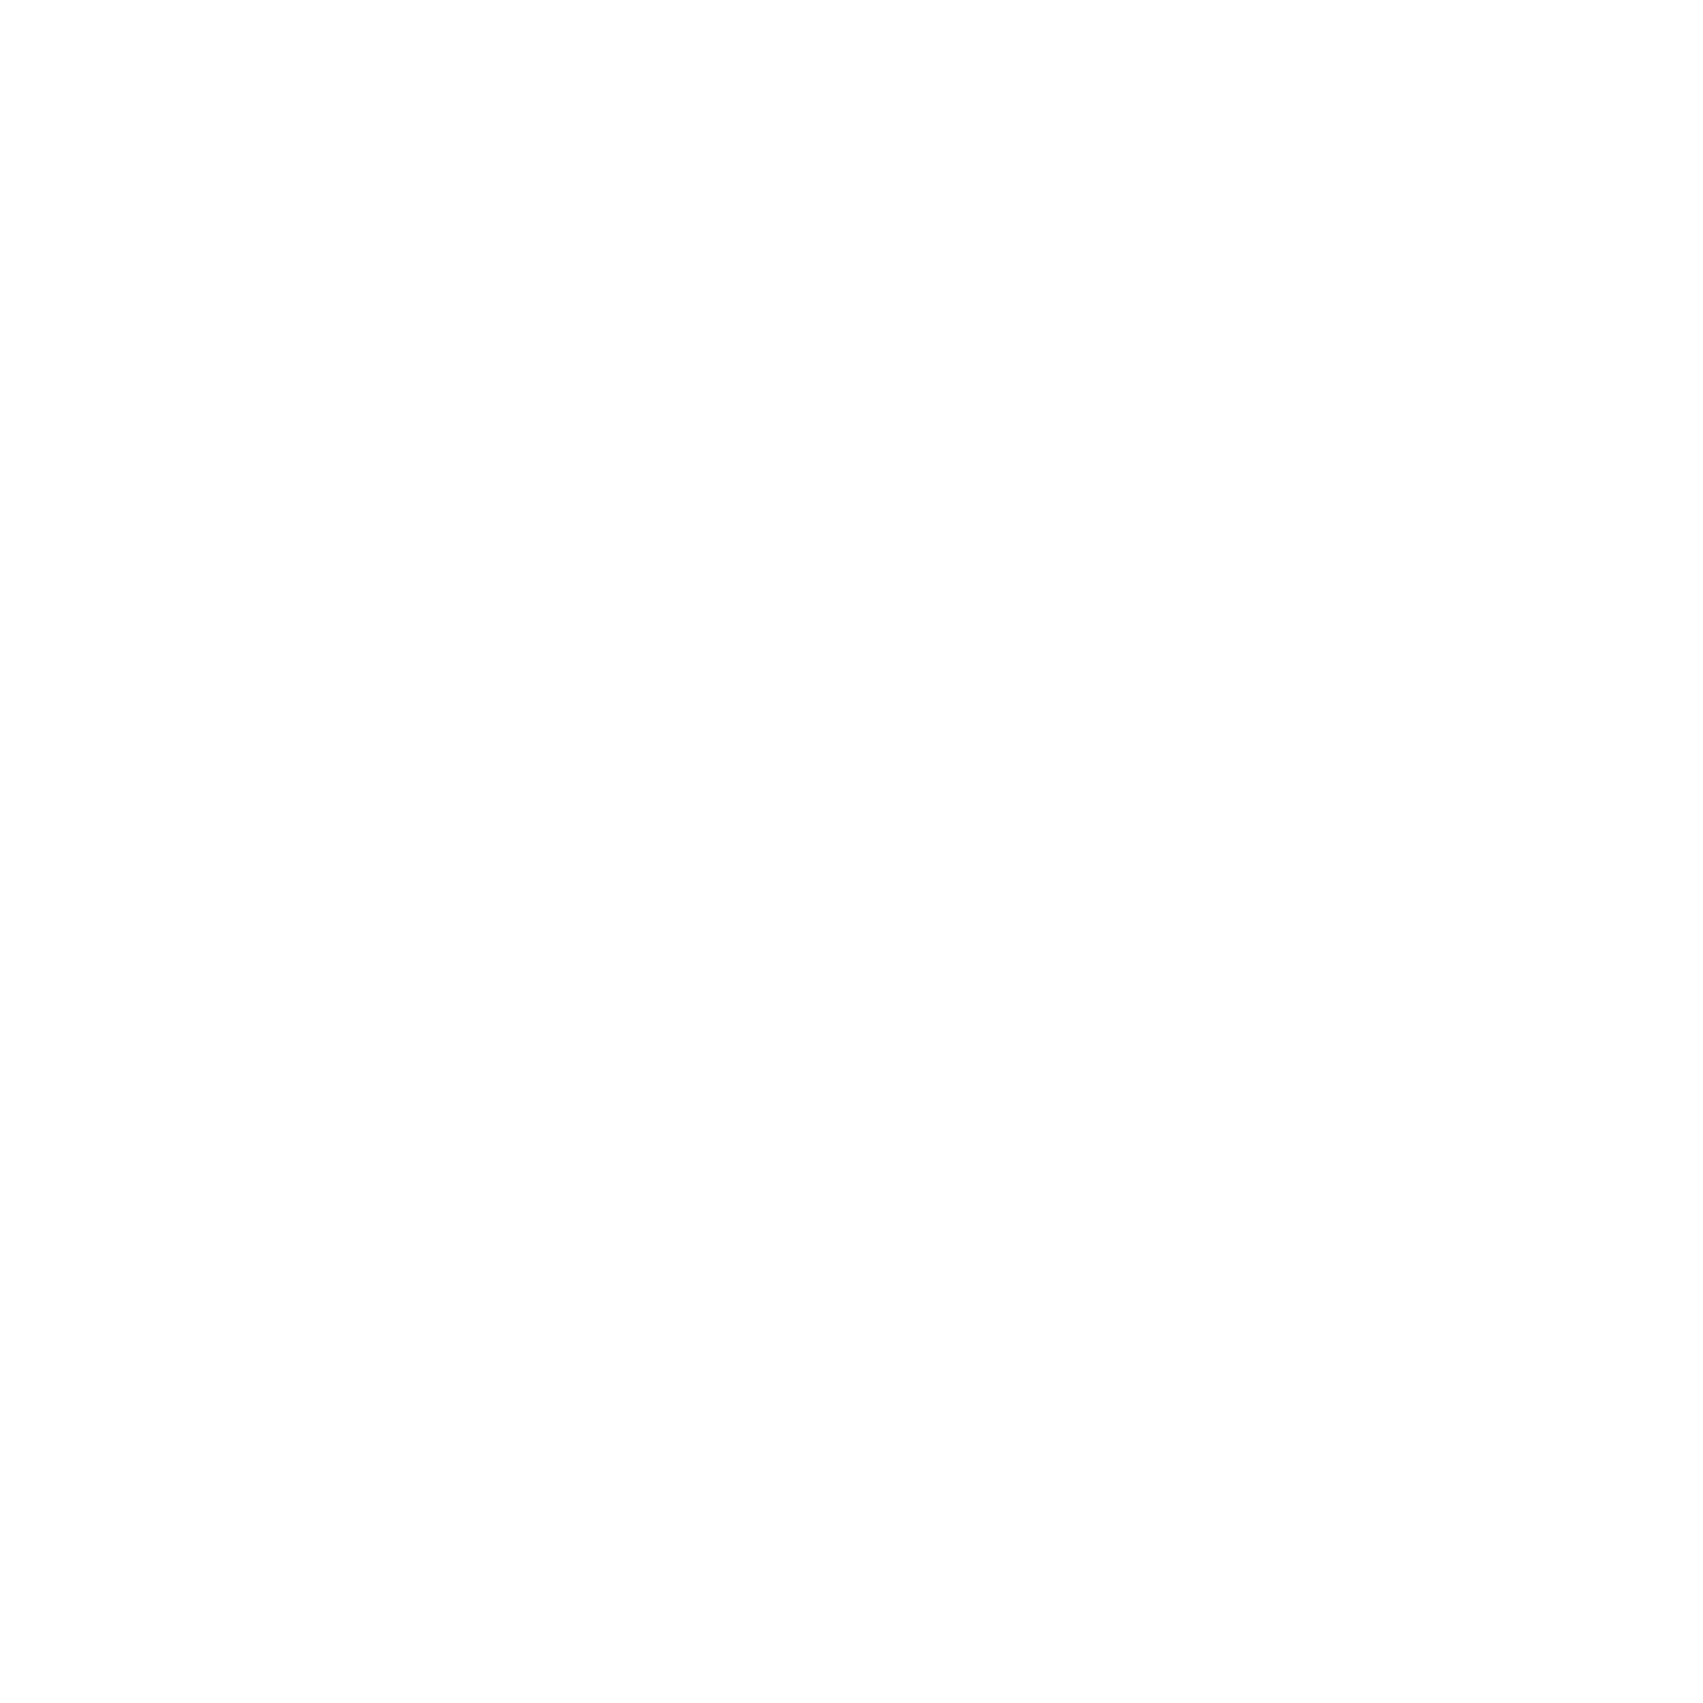 LED House logo